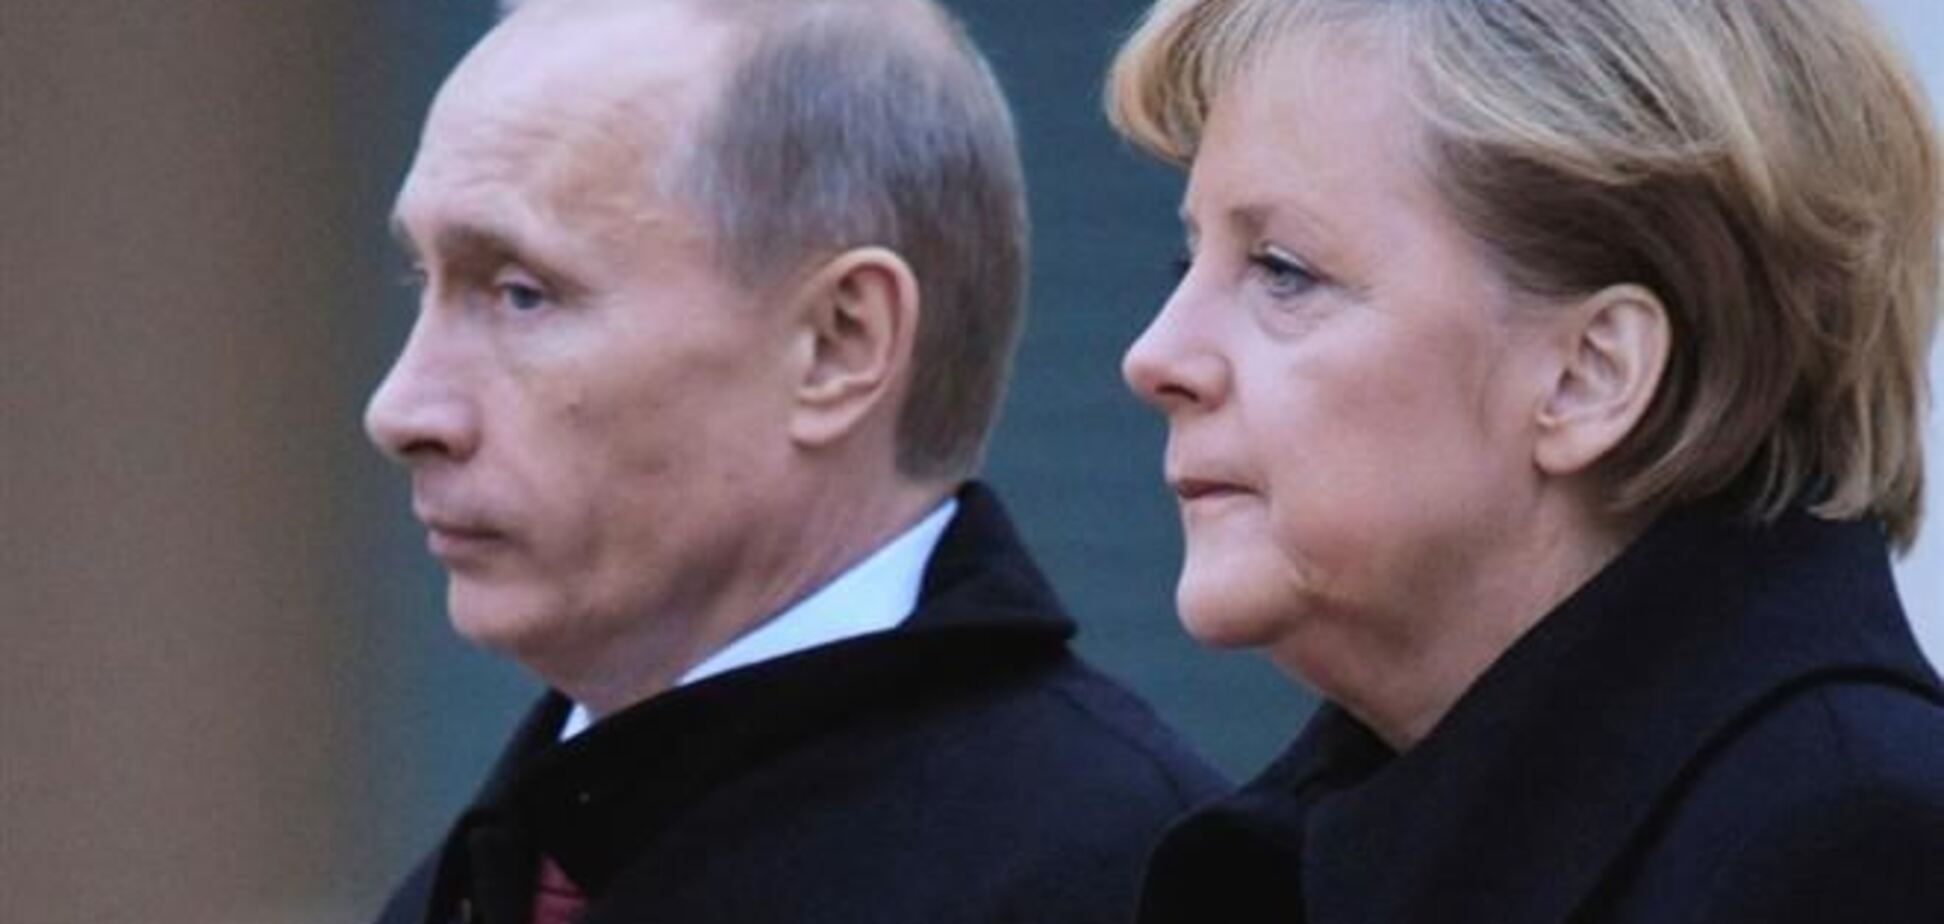 Меркель и Путин обговорили ситуацию в Украине 